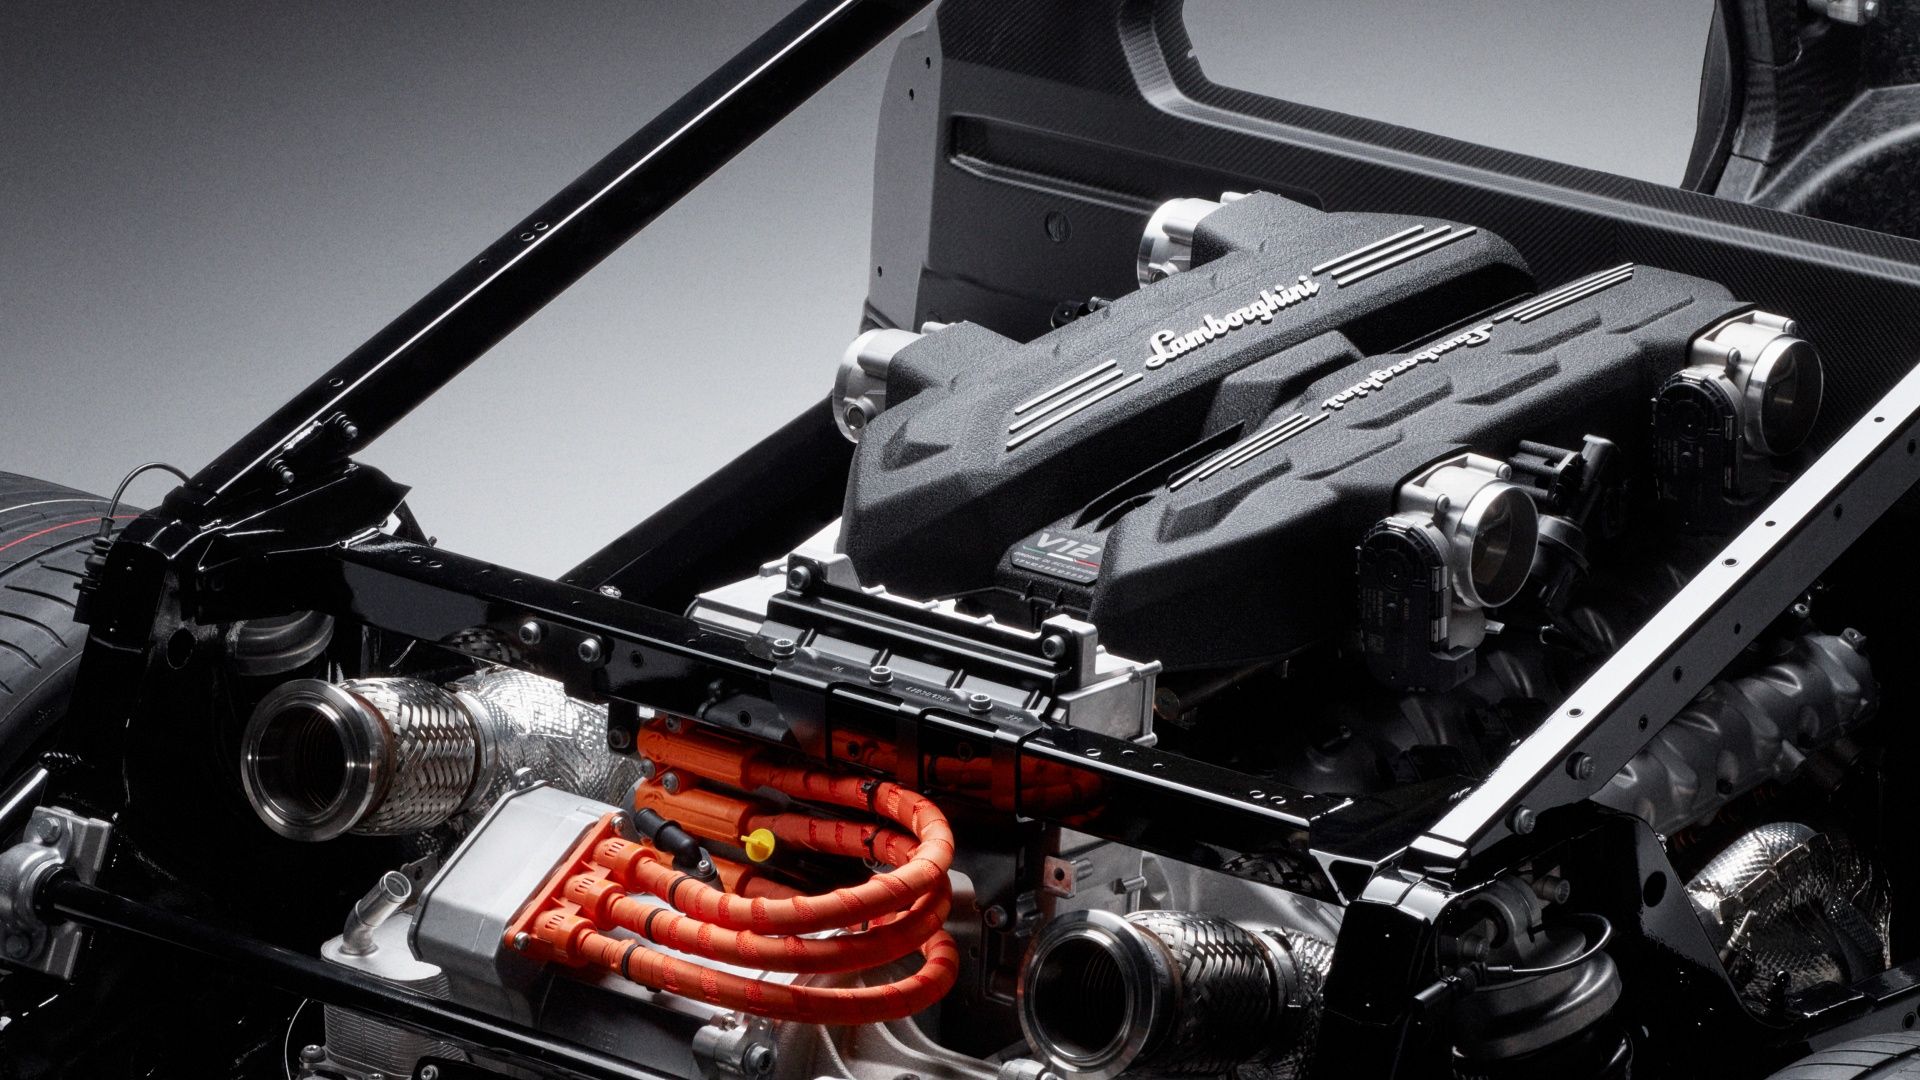 Foto studio mesin pembakaran Lamborghini LB744 6.5 liter V-12, gearbox dan motor listrik belakang